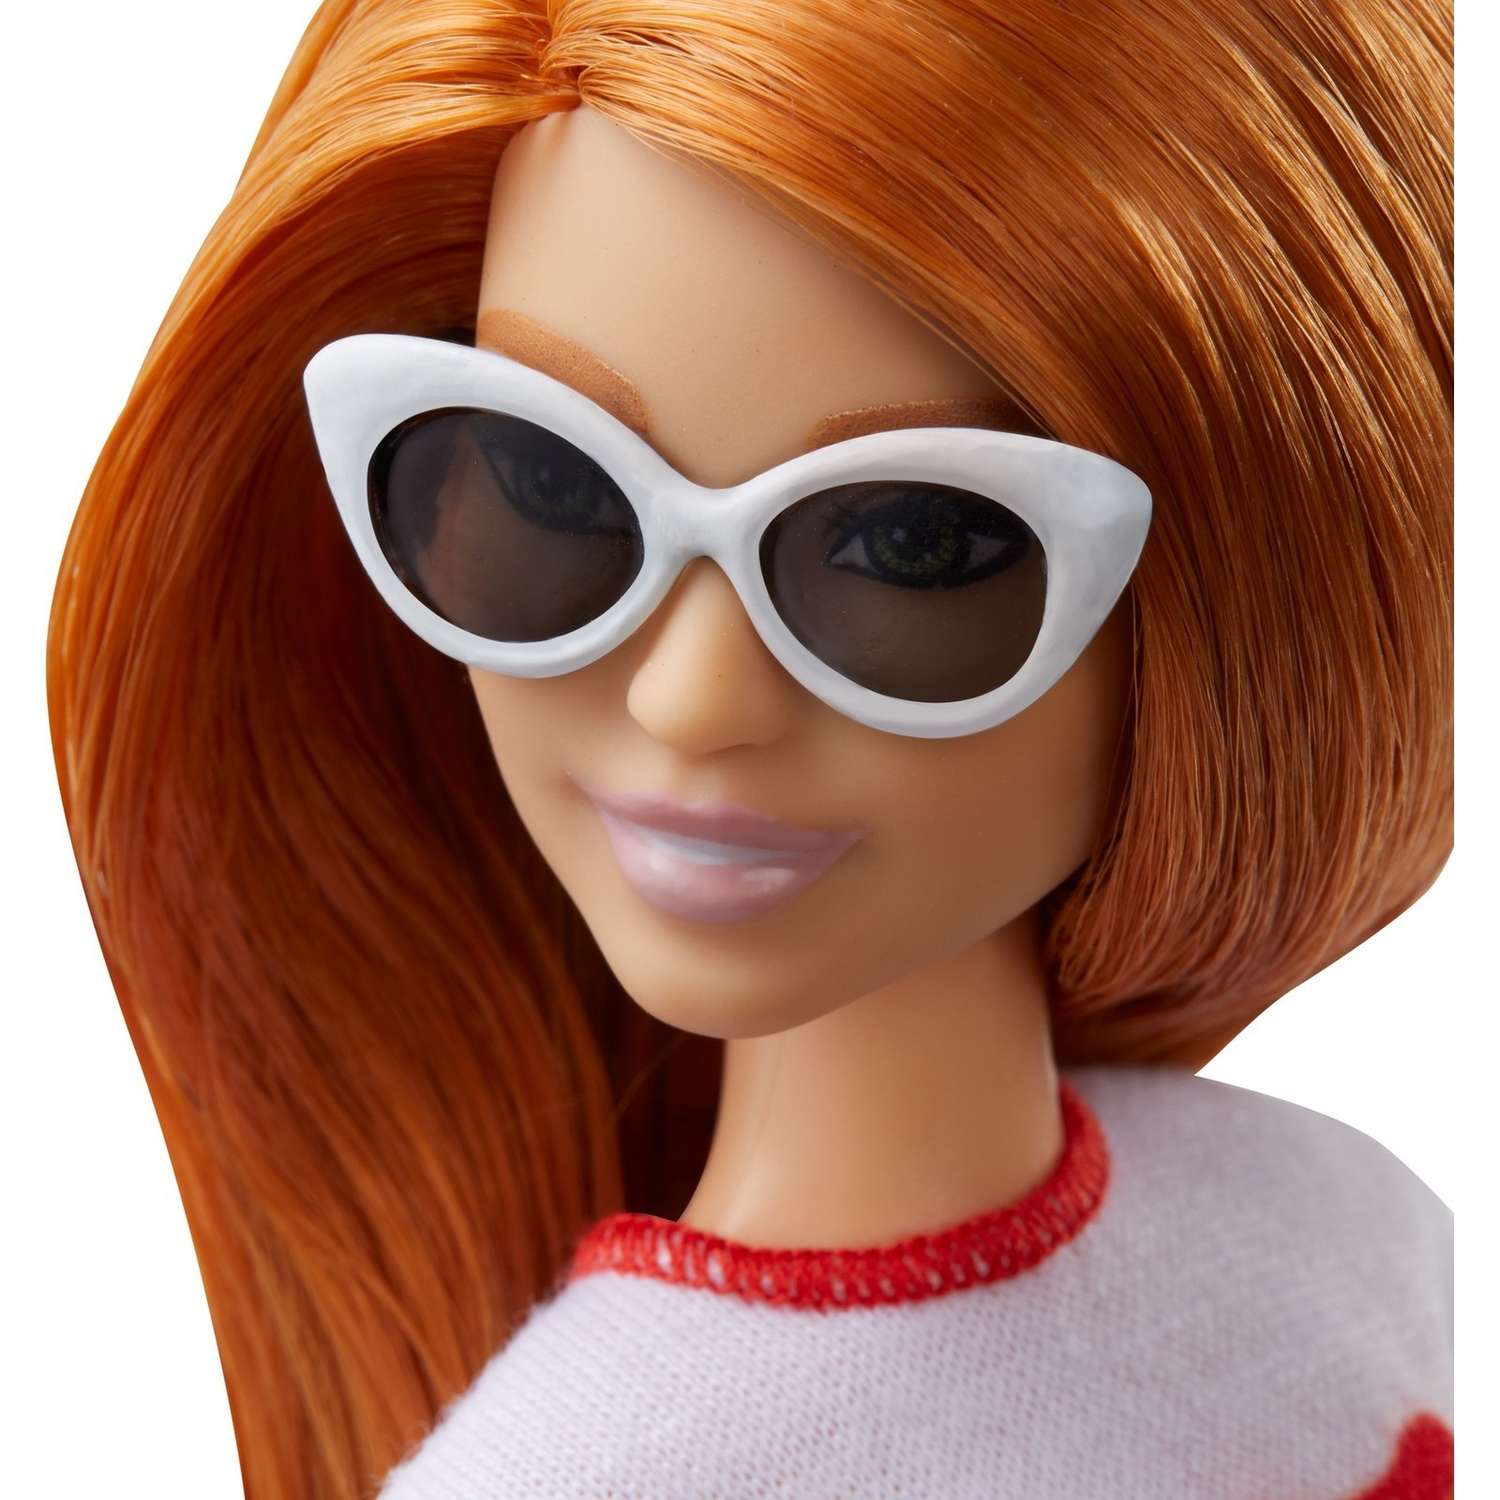 Кукла Barbie Игра с модой 122 Радужный восторг FXL55 FBR37 - фото 9